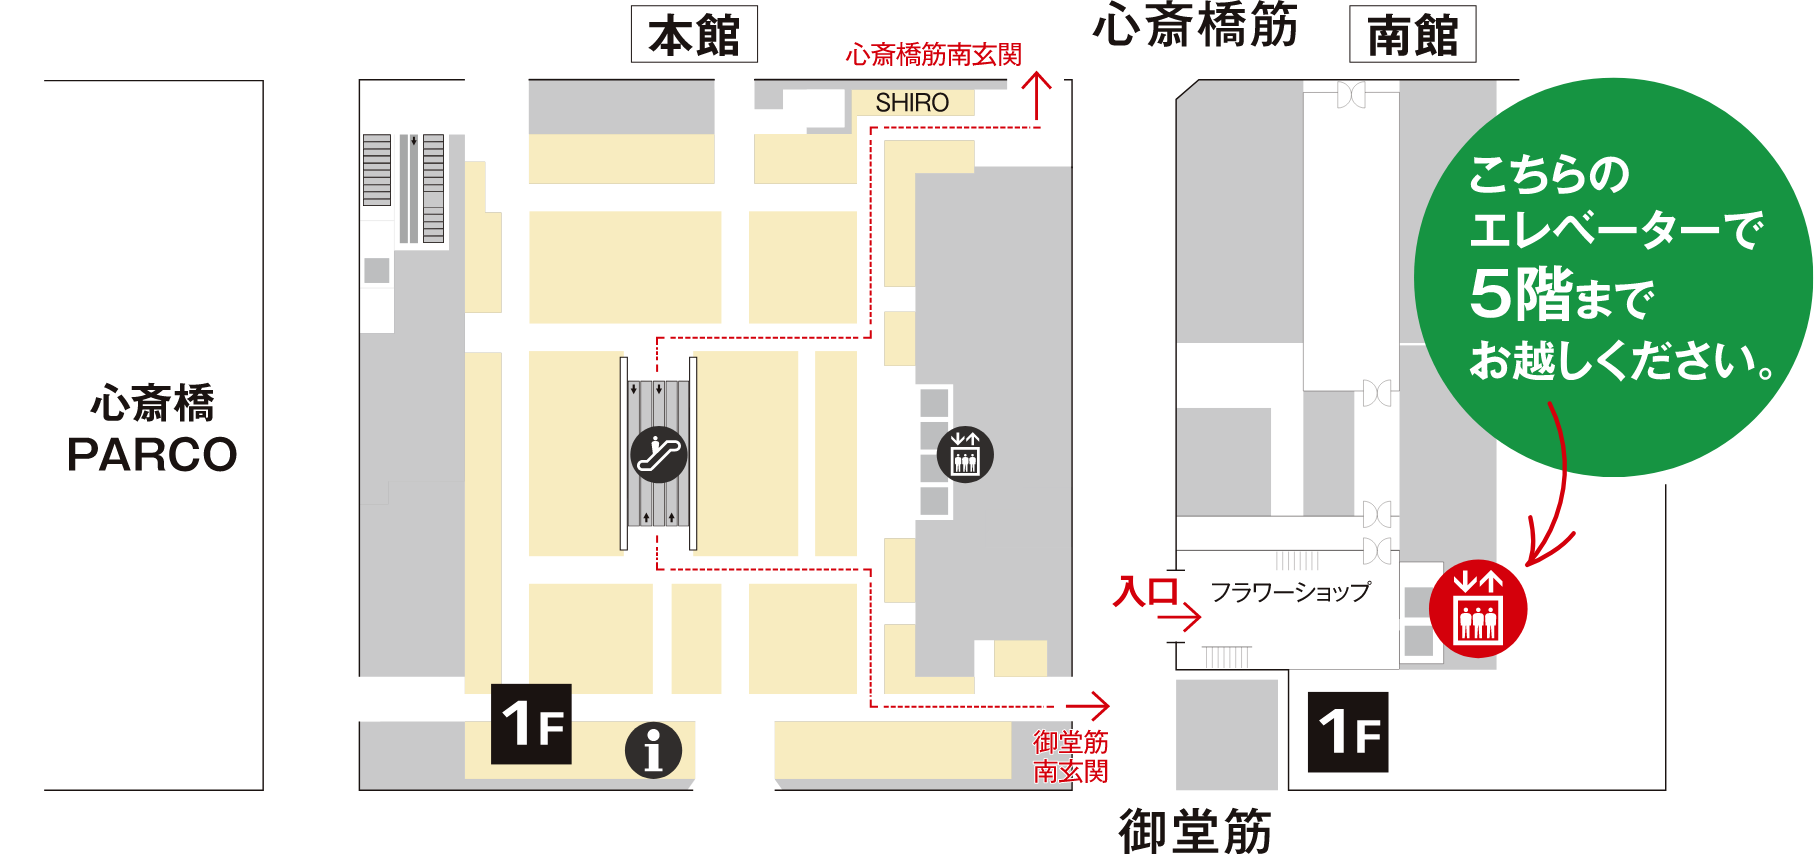 大丸心斎橋店MAP